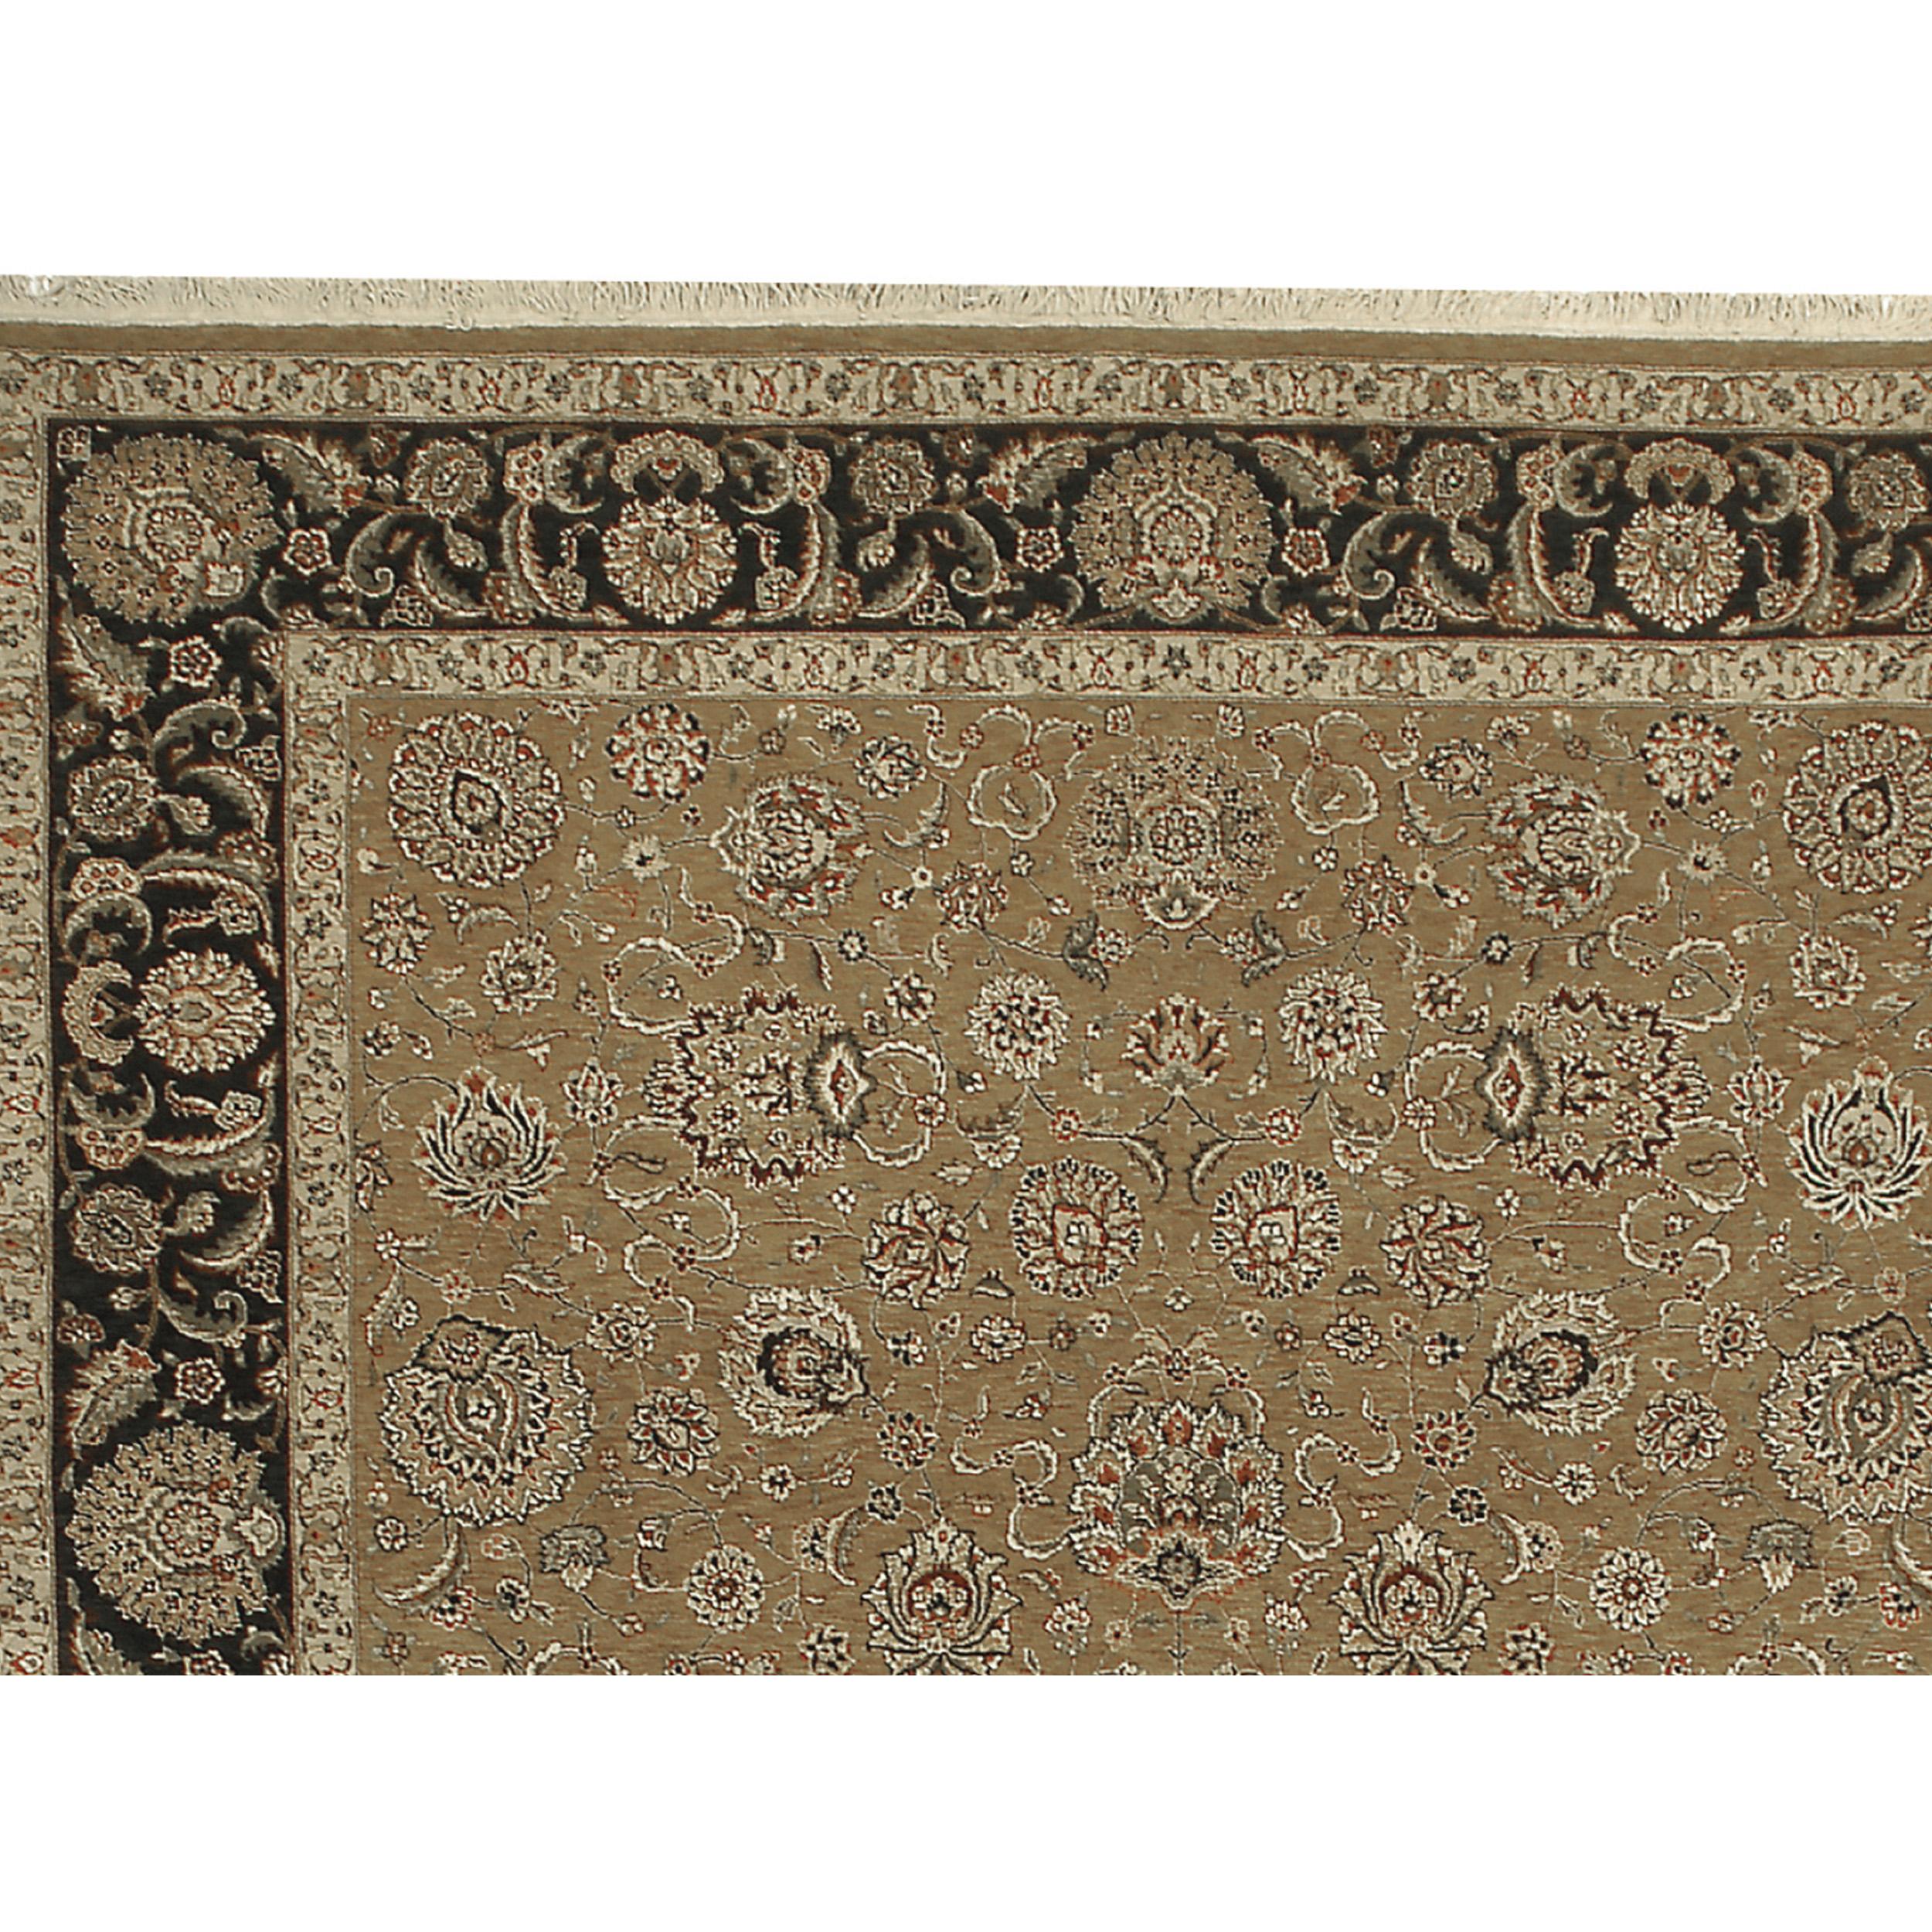 Le design de ce tapis s'inspire d'anciens tapis persans, mais avec une palette de couleurs contemporaines. La principale caractéristique de ce tapis est le remarquable abrash (changement de couleur), une nouvelle technique de tissage entre deux